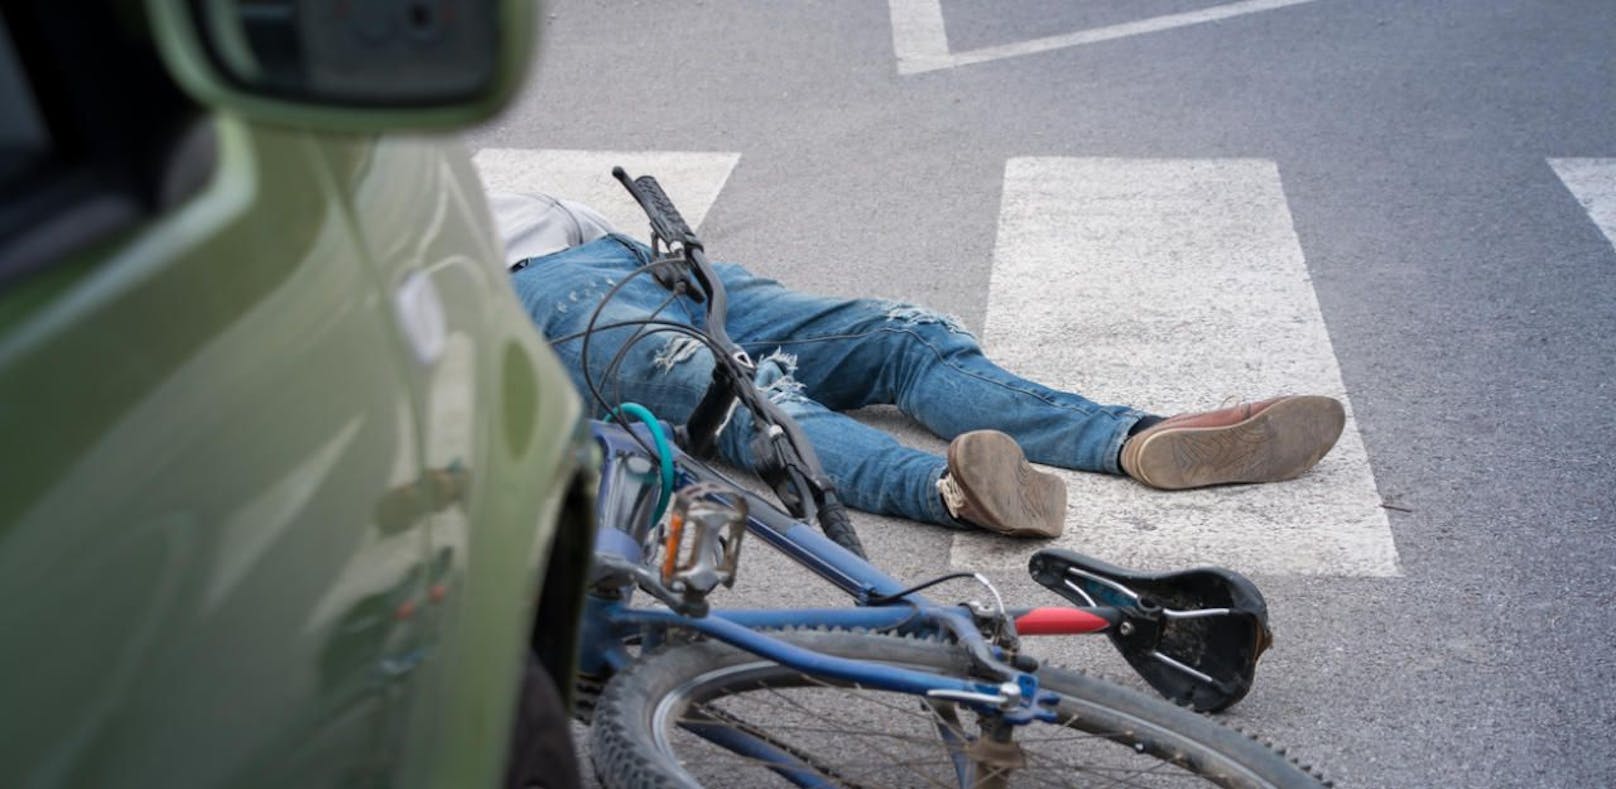 (Symbolfoto) Mittwochvormittag ereigneten sich im Grazer Stadtgebiet drei Verkehrsunfälle, bei denen jeweils eine Radfahrerin mit einem Pkw kollidierte. Drei Frauen im Alter von 23, 25 und 68 Jahren wurden schwer verletzt.